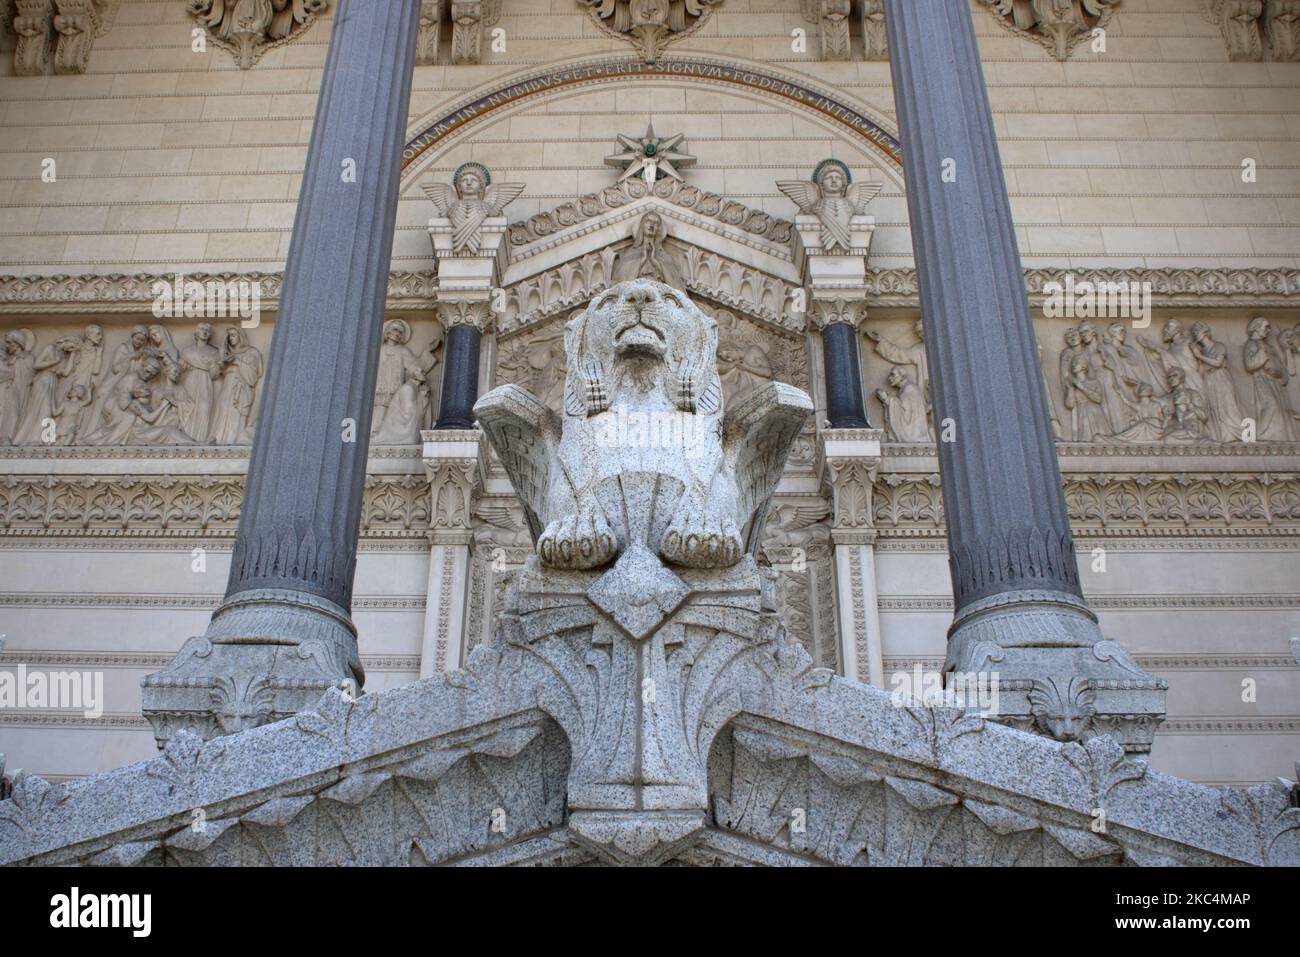 Vue abstraite du lion qui garde l'entrée de la basilique notre-Dame de Fourvière datant du 19th siècle située dans la vieille ville de Lyon France Banque D'Images